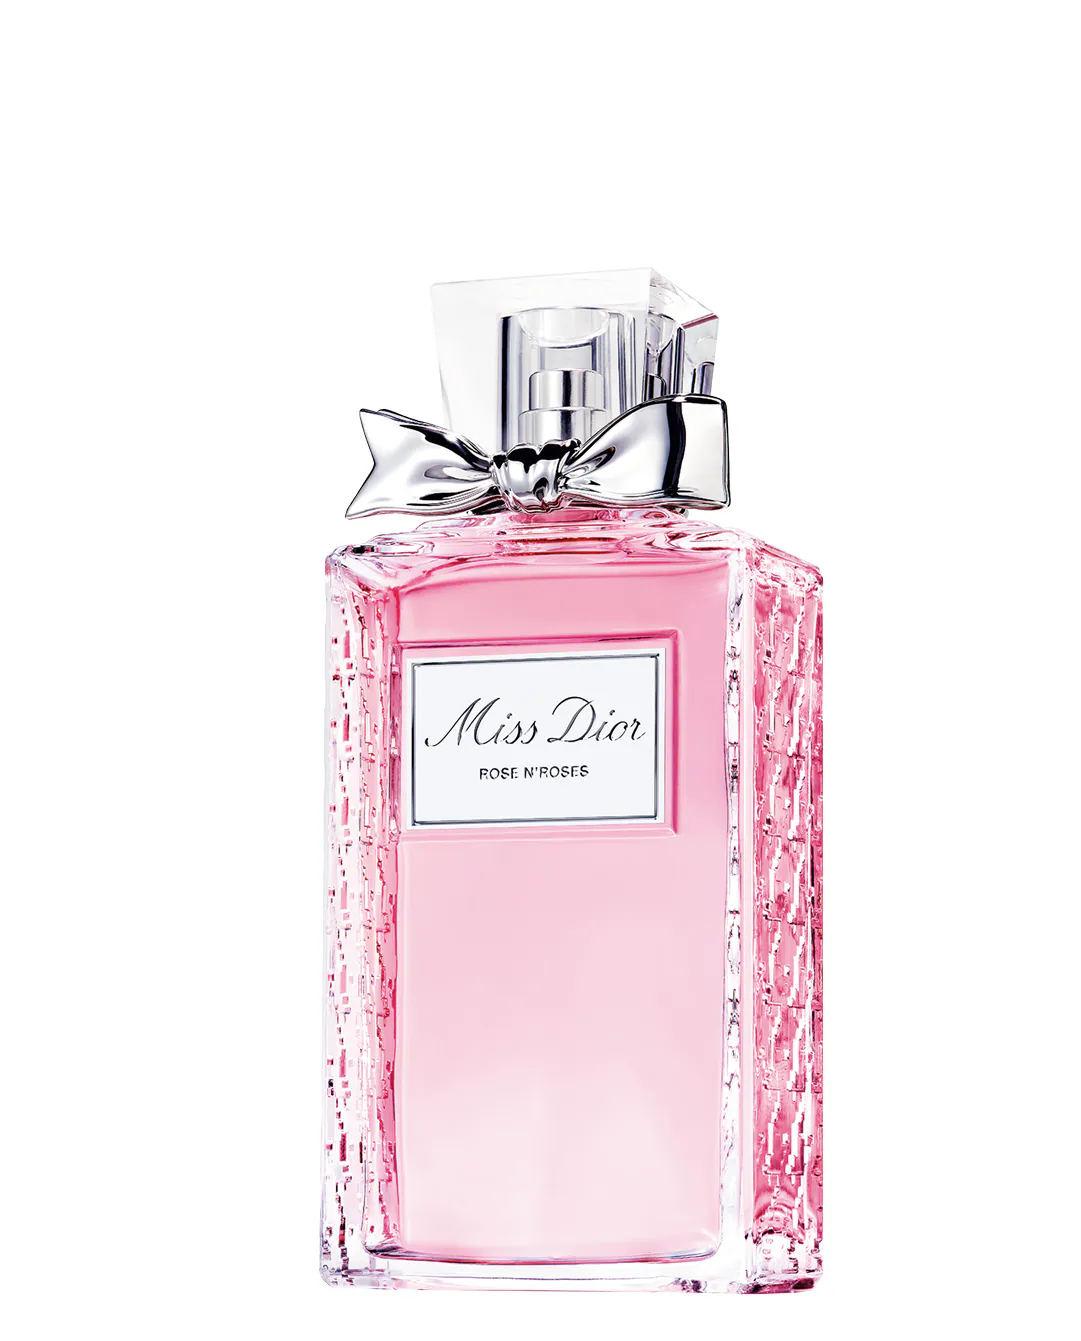 Fotos: Perfumes buenos, bonitos para regalar (o regalarte) en San Mujer Hoy